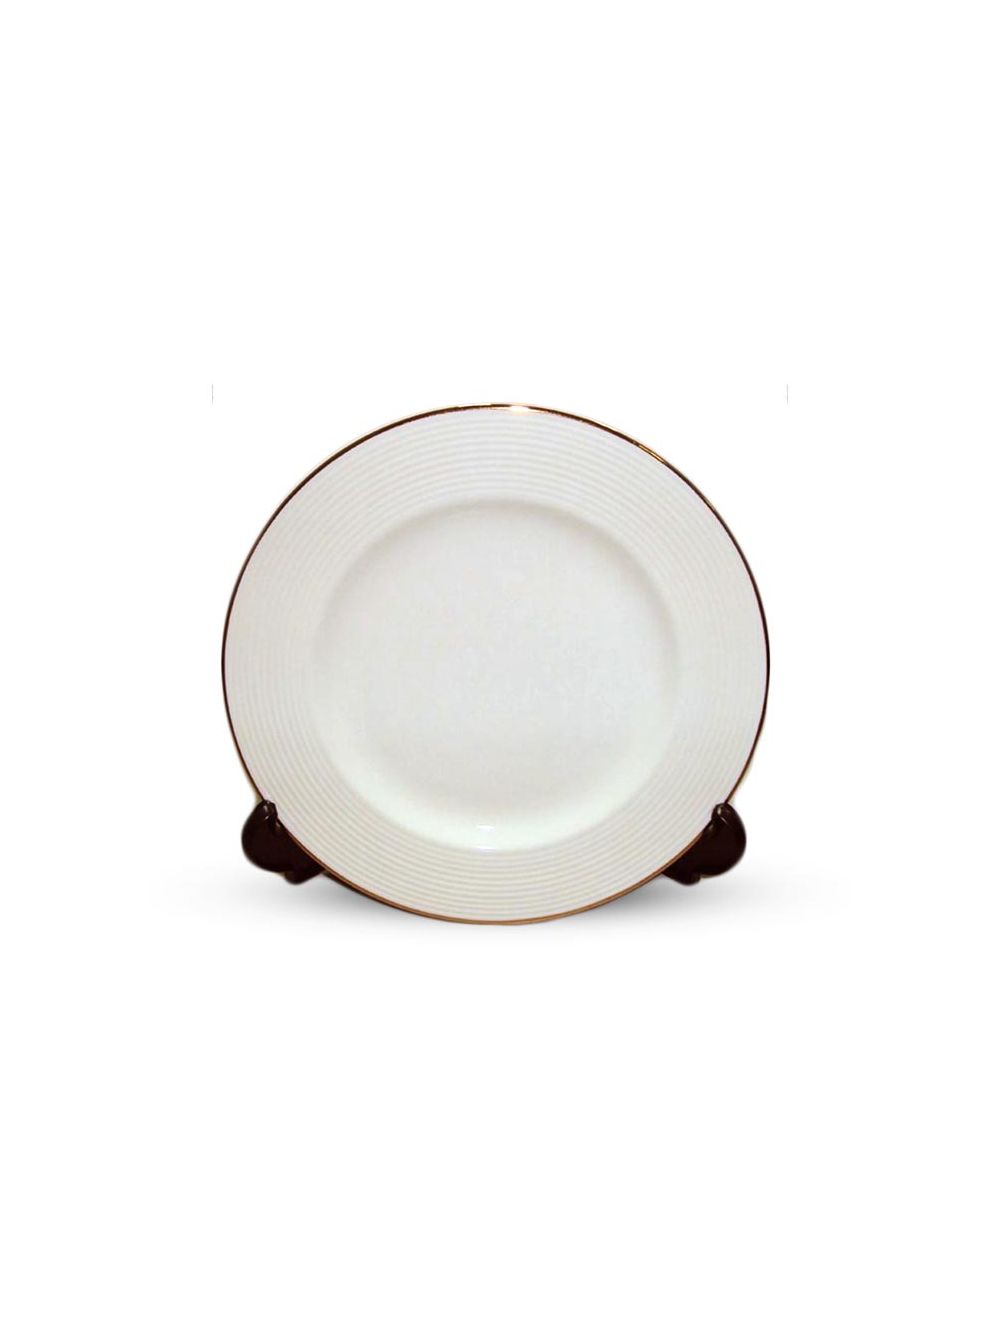 Plate Gold Linen - White 17.5cm 